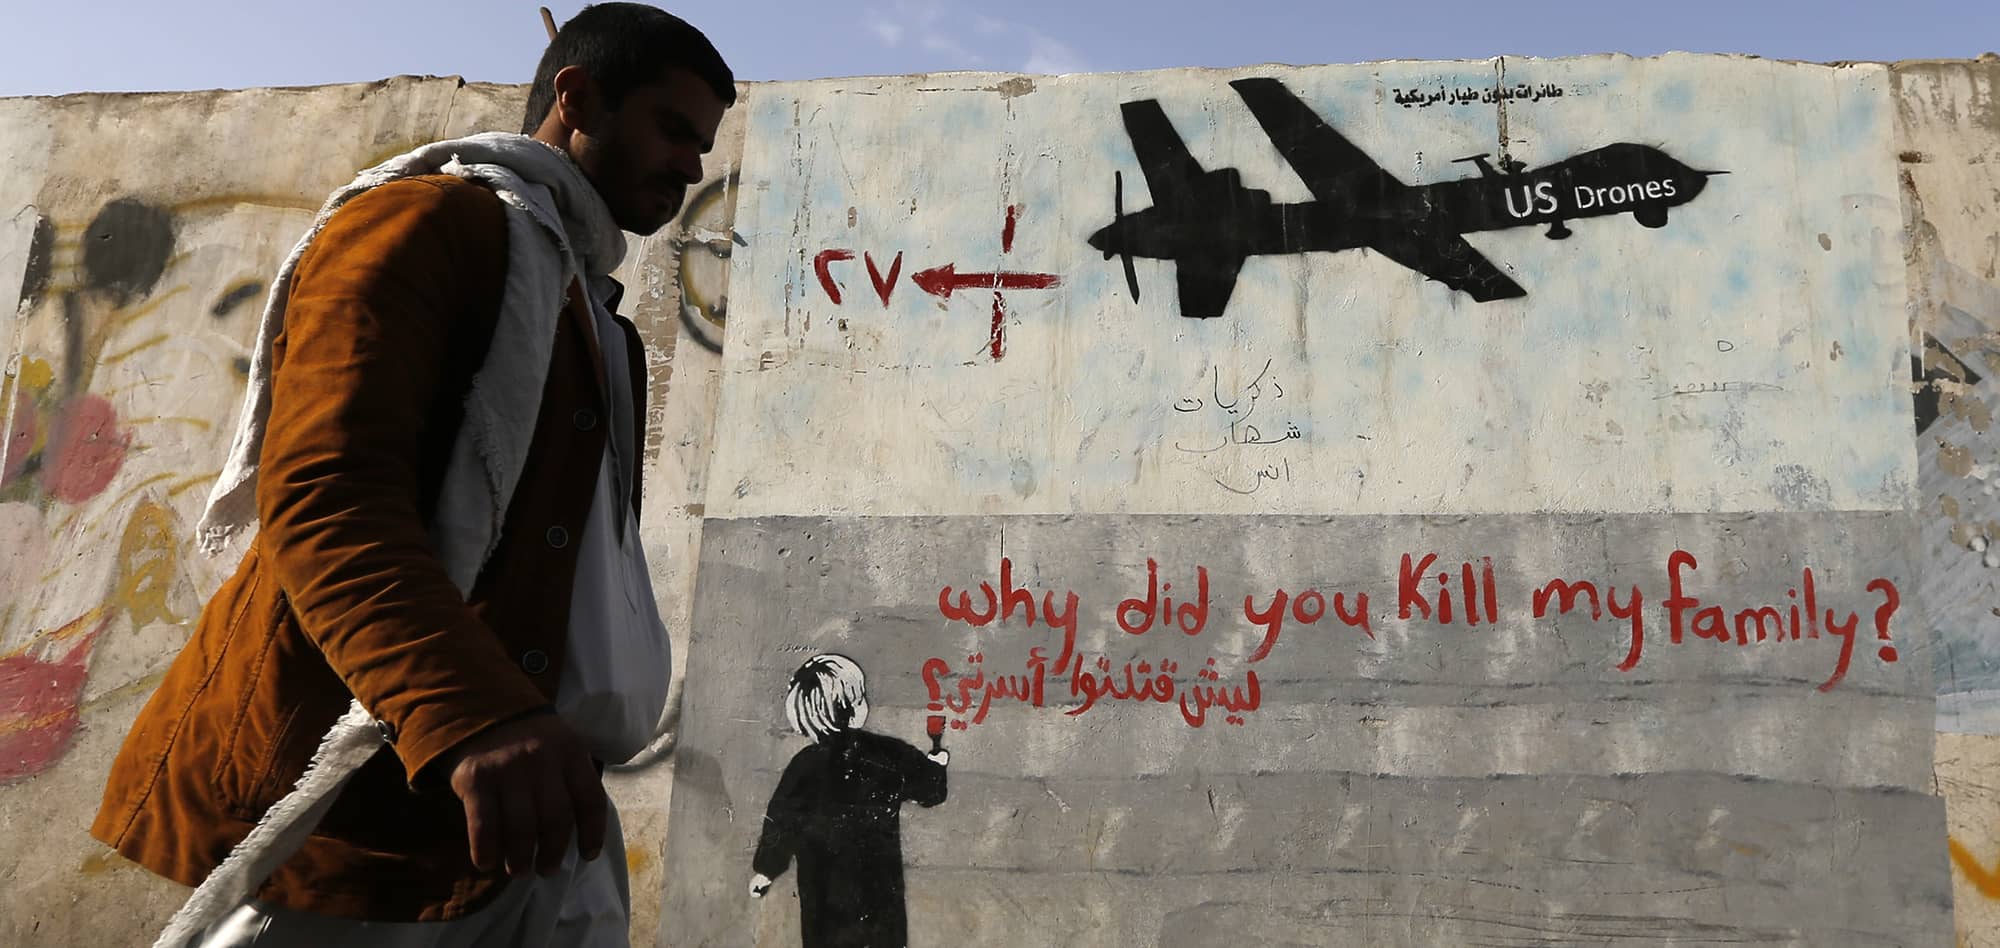 Grafiti que denuncia ataques estadounidenses con drones en Yemen